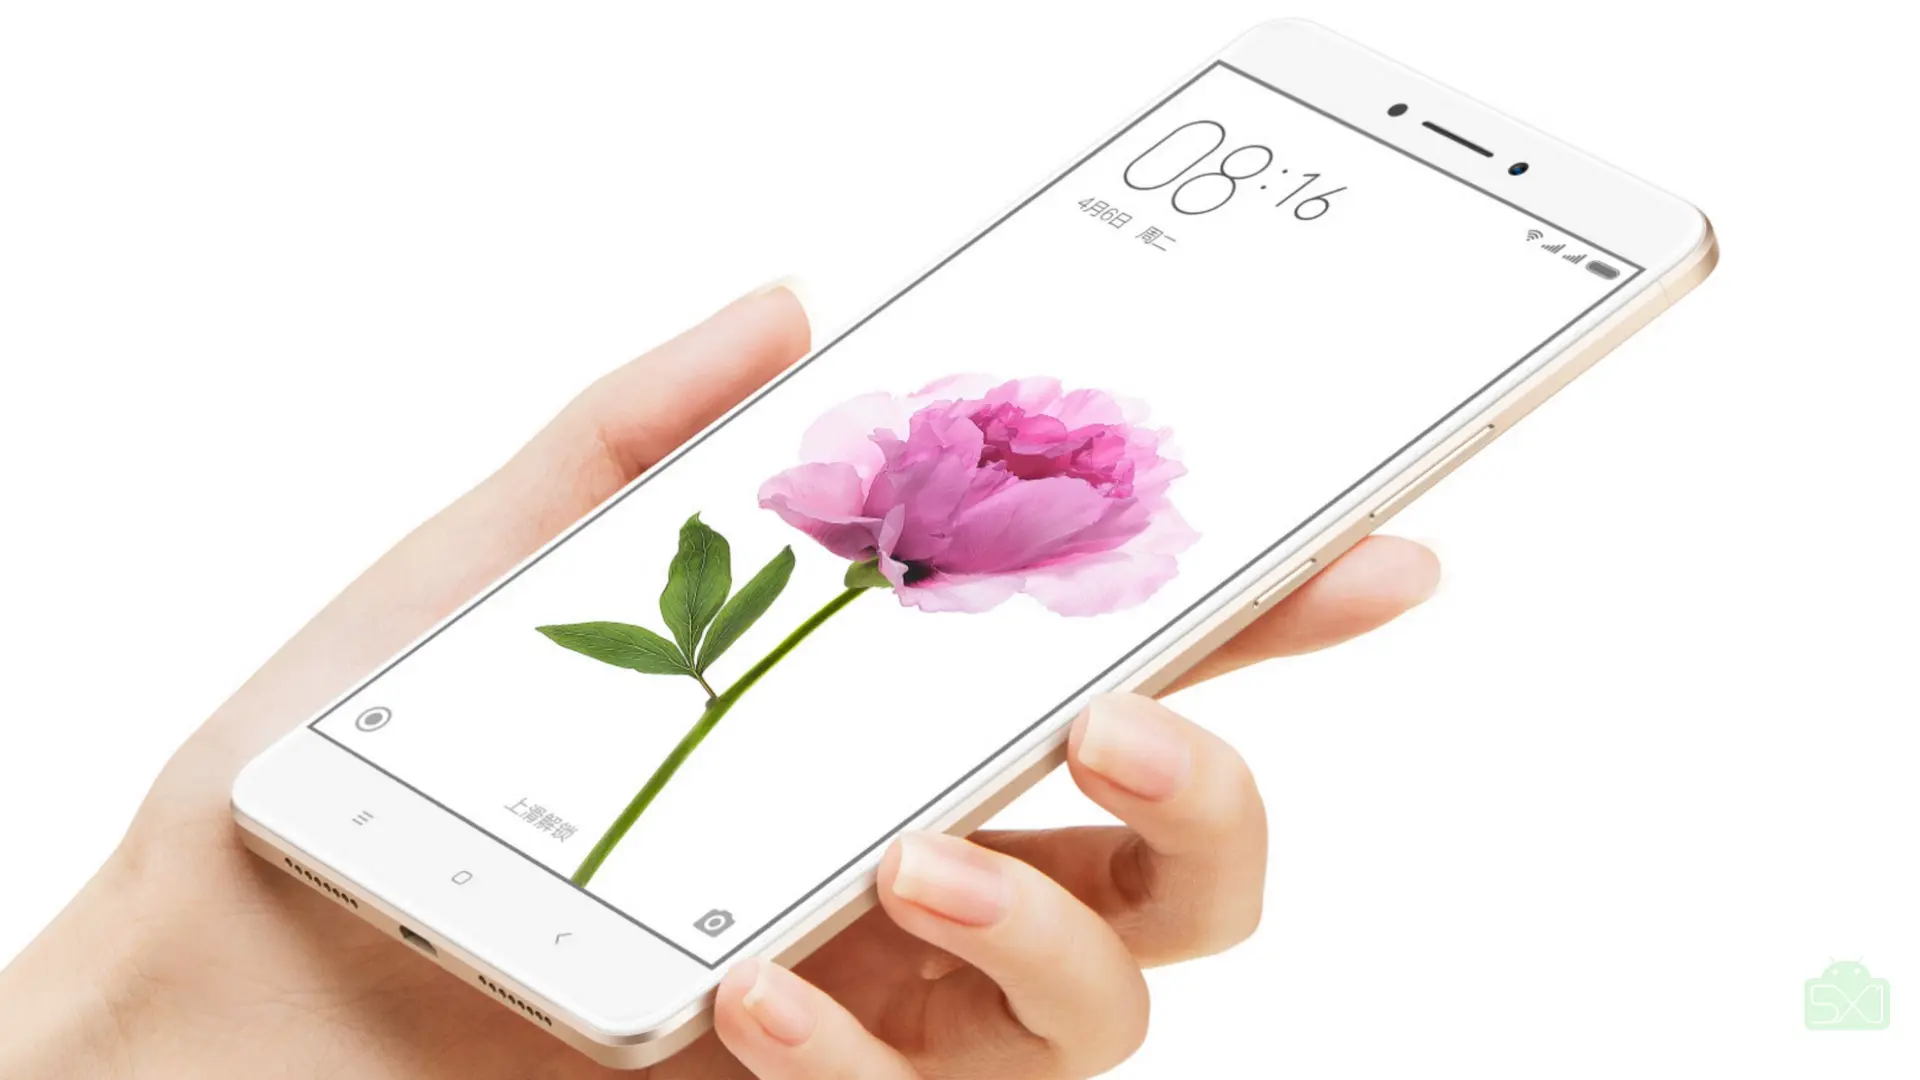 Xiaomi Mi Max recibe 10 millones de registros para su primera venta